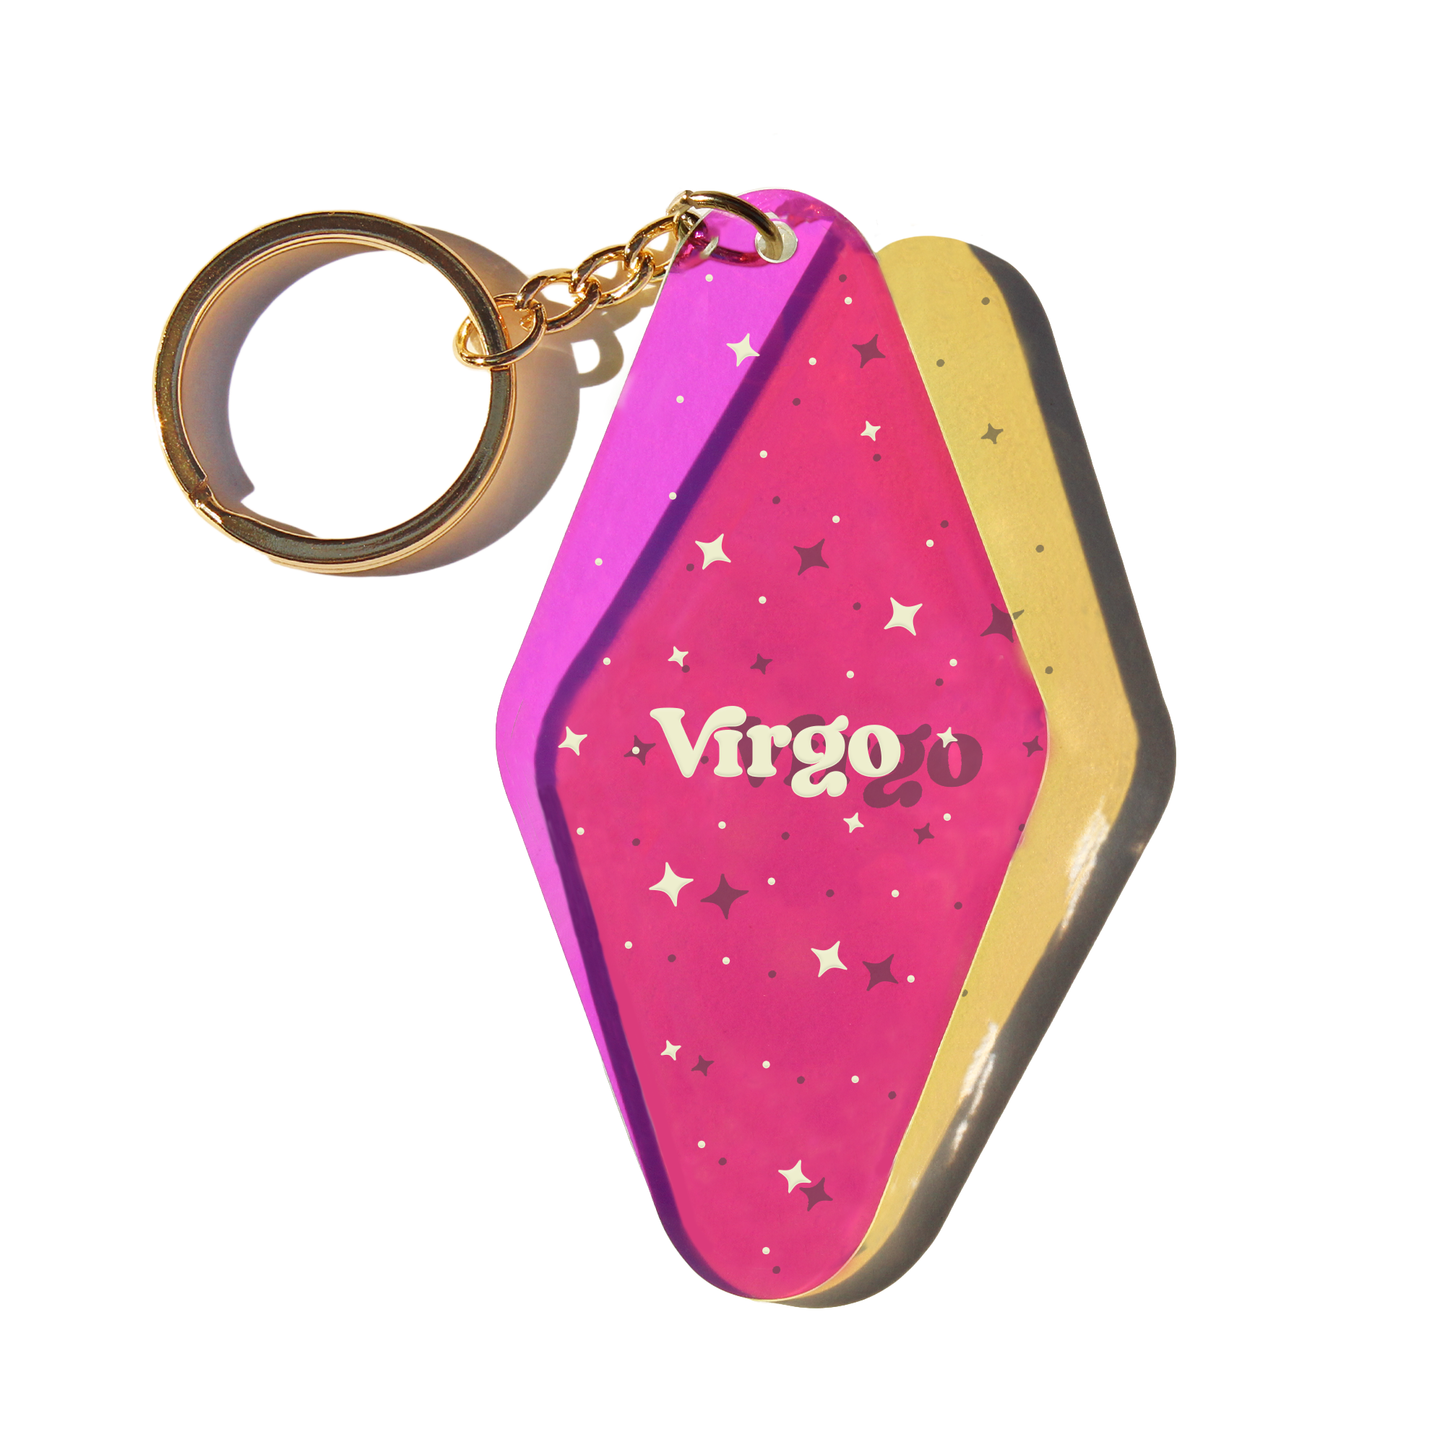 virgo, virgo keychain, virgo zodiac